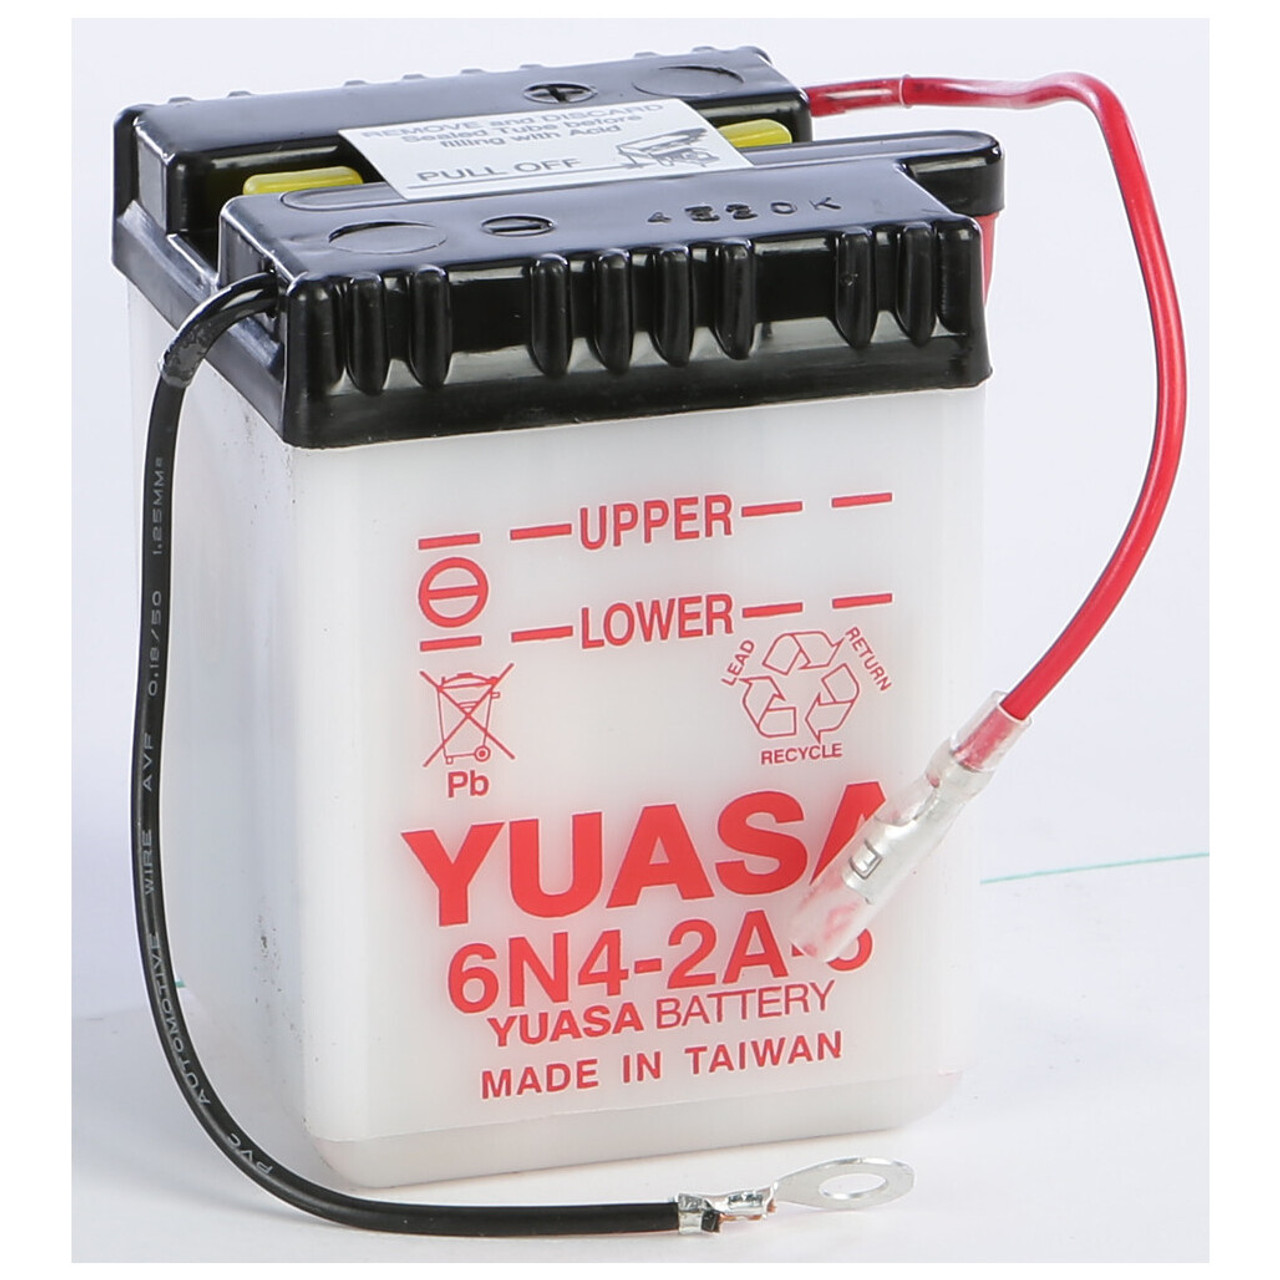 Yuasa Battery 6N4-2A-5 Conventional